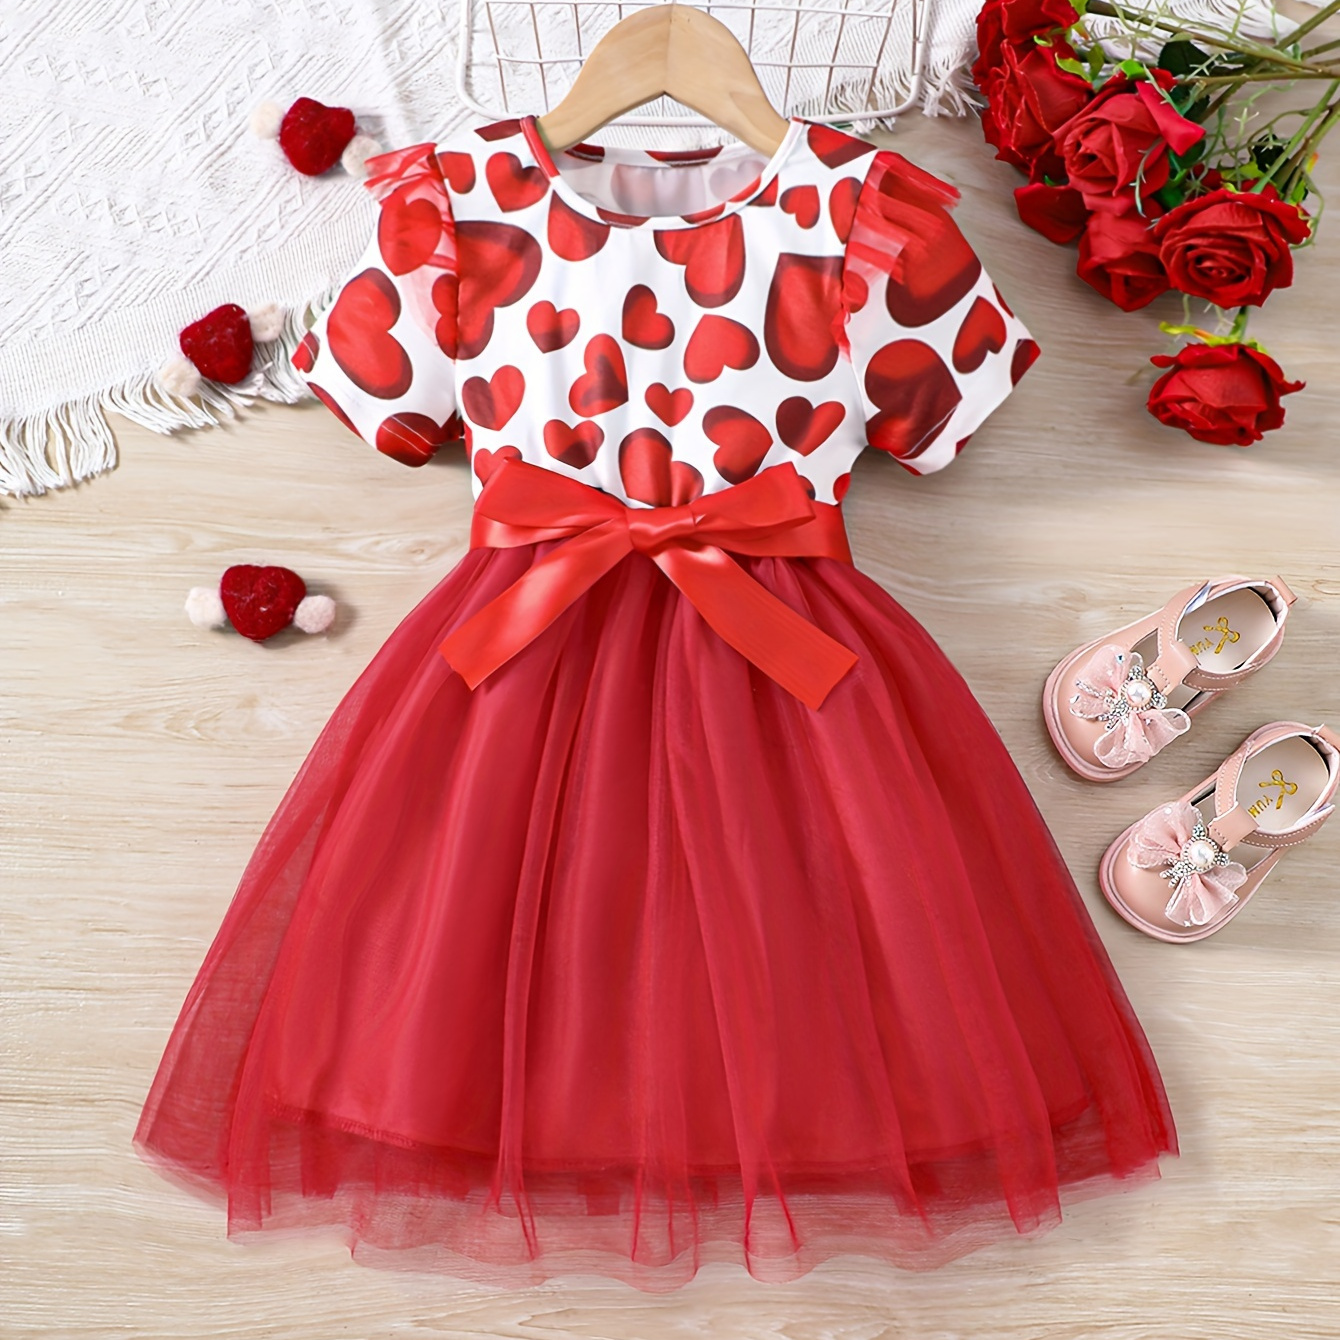 

Sweet Girls Heart Print Short Sleeve Tutu Dress Princess Mesh Dress Party Gift Summer